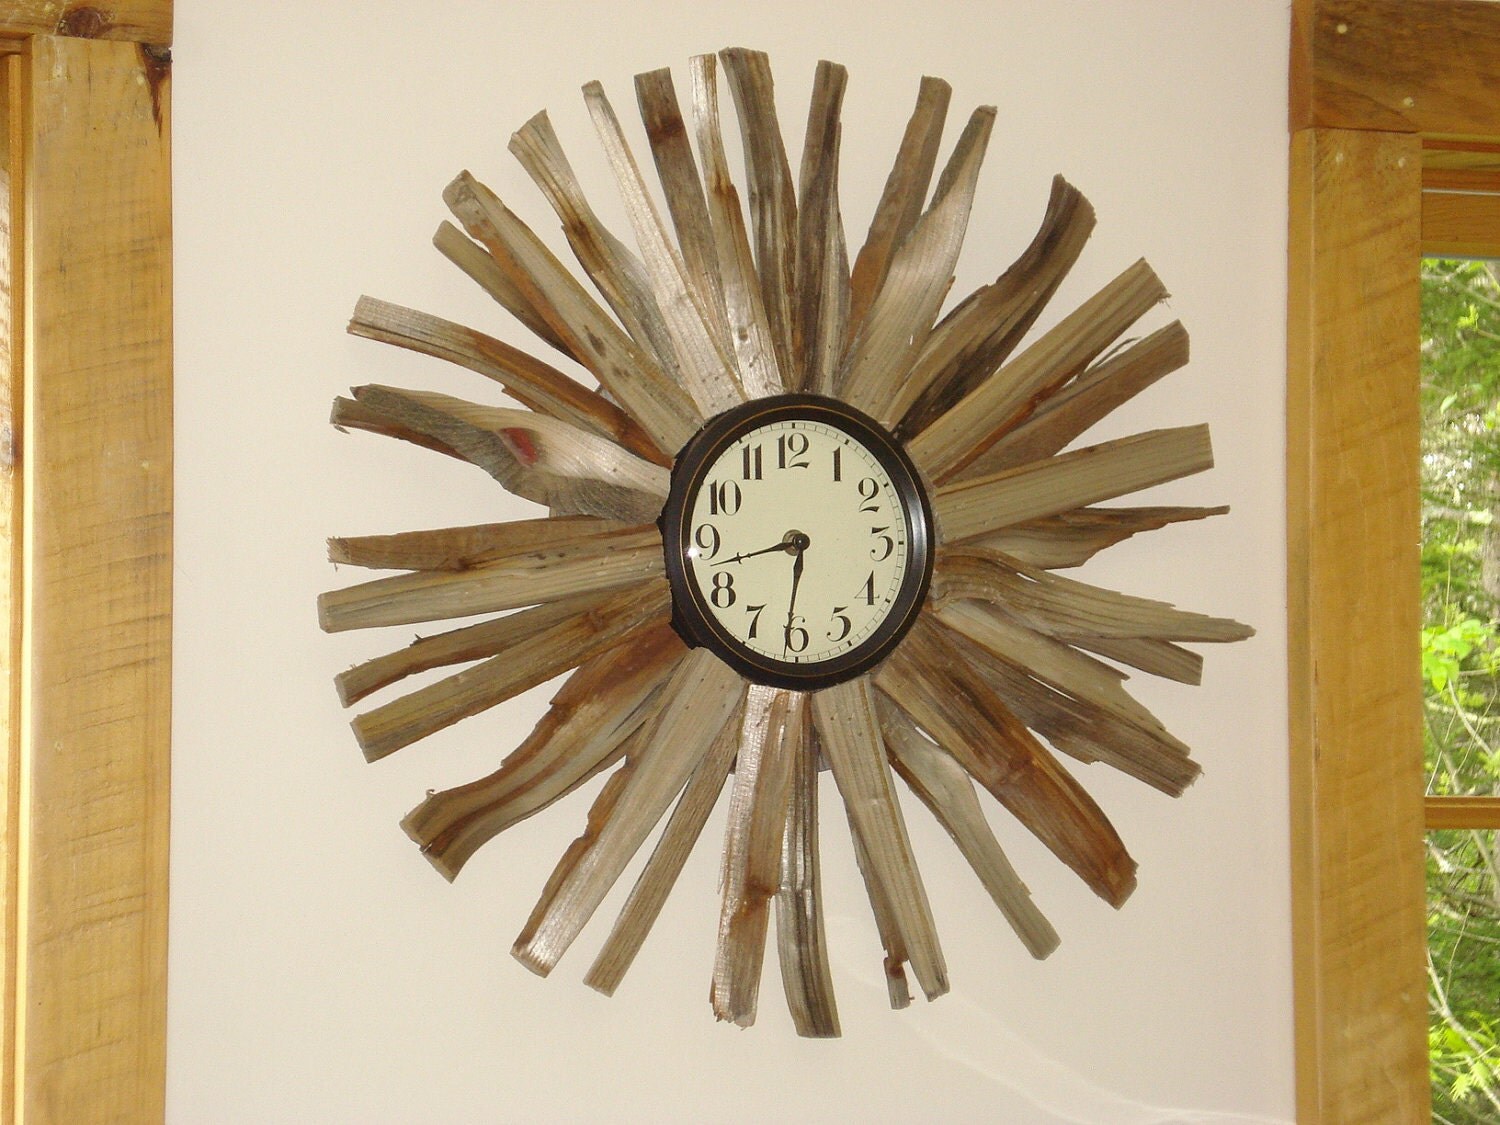 Driffwood ahşap tasarımlı duvar saatleri                       Tasarımcı : Duff Powell